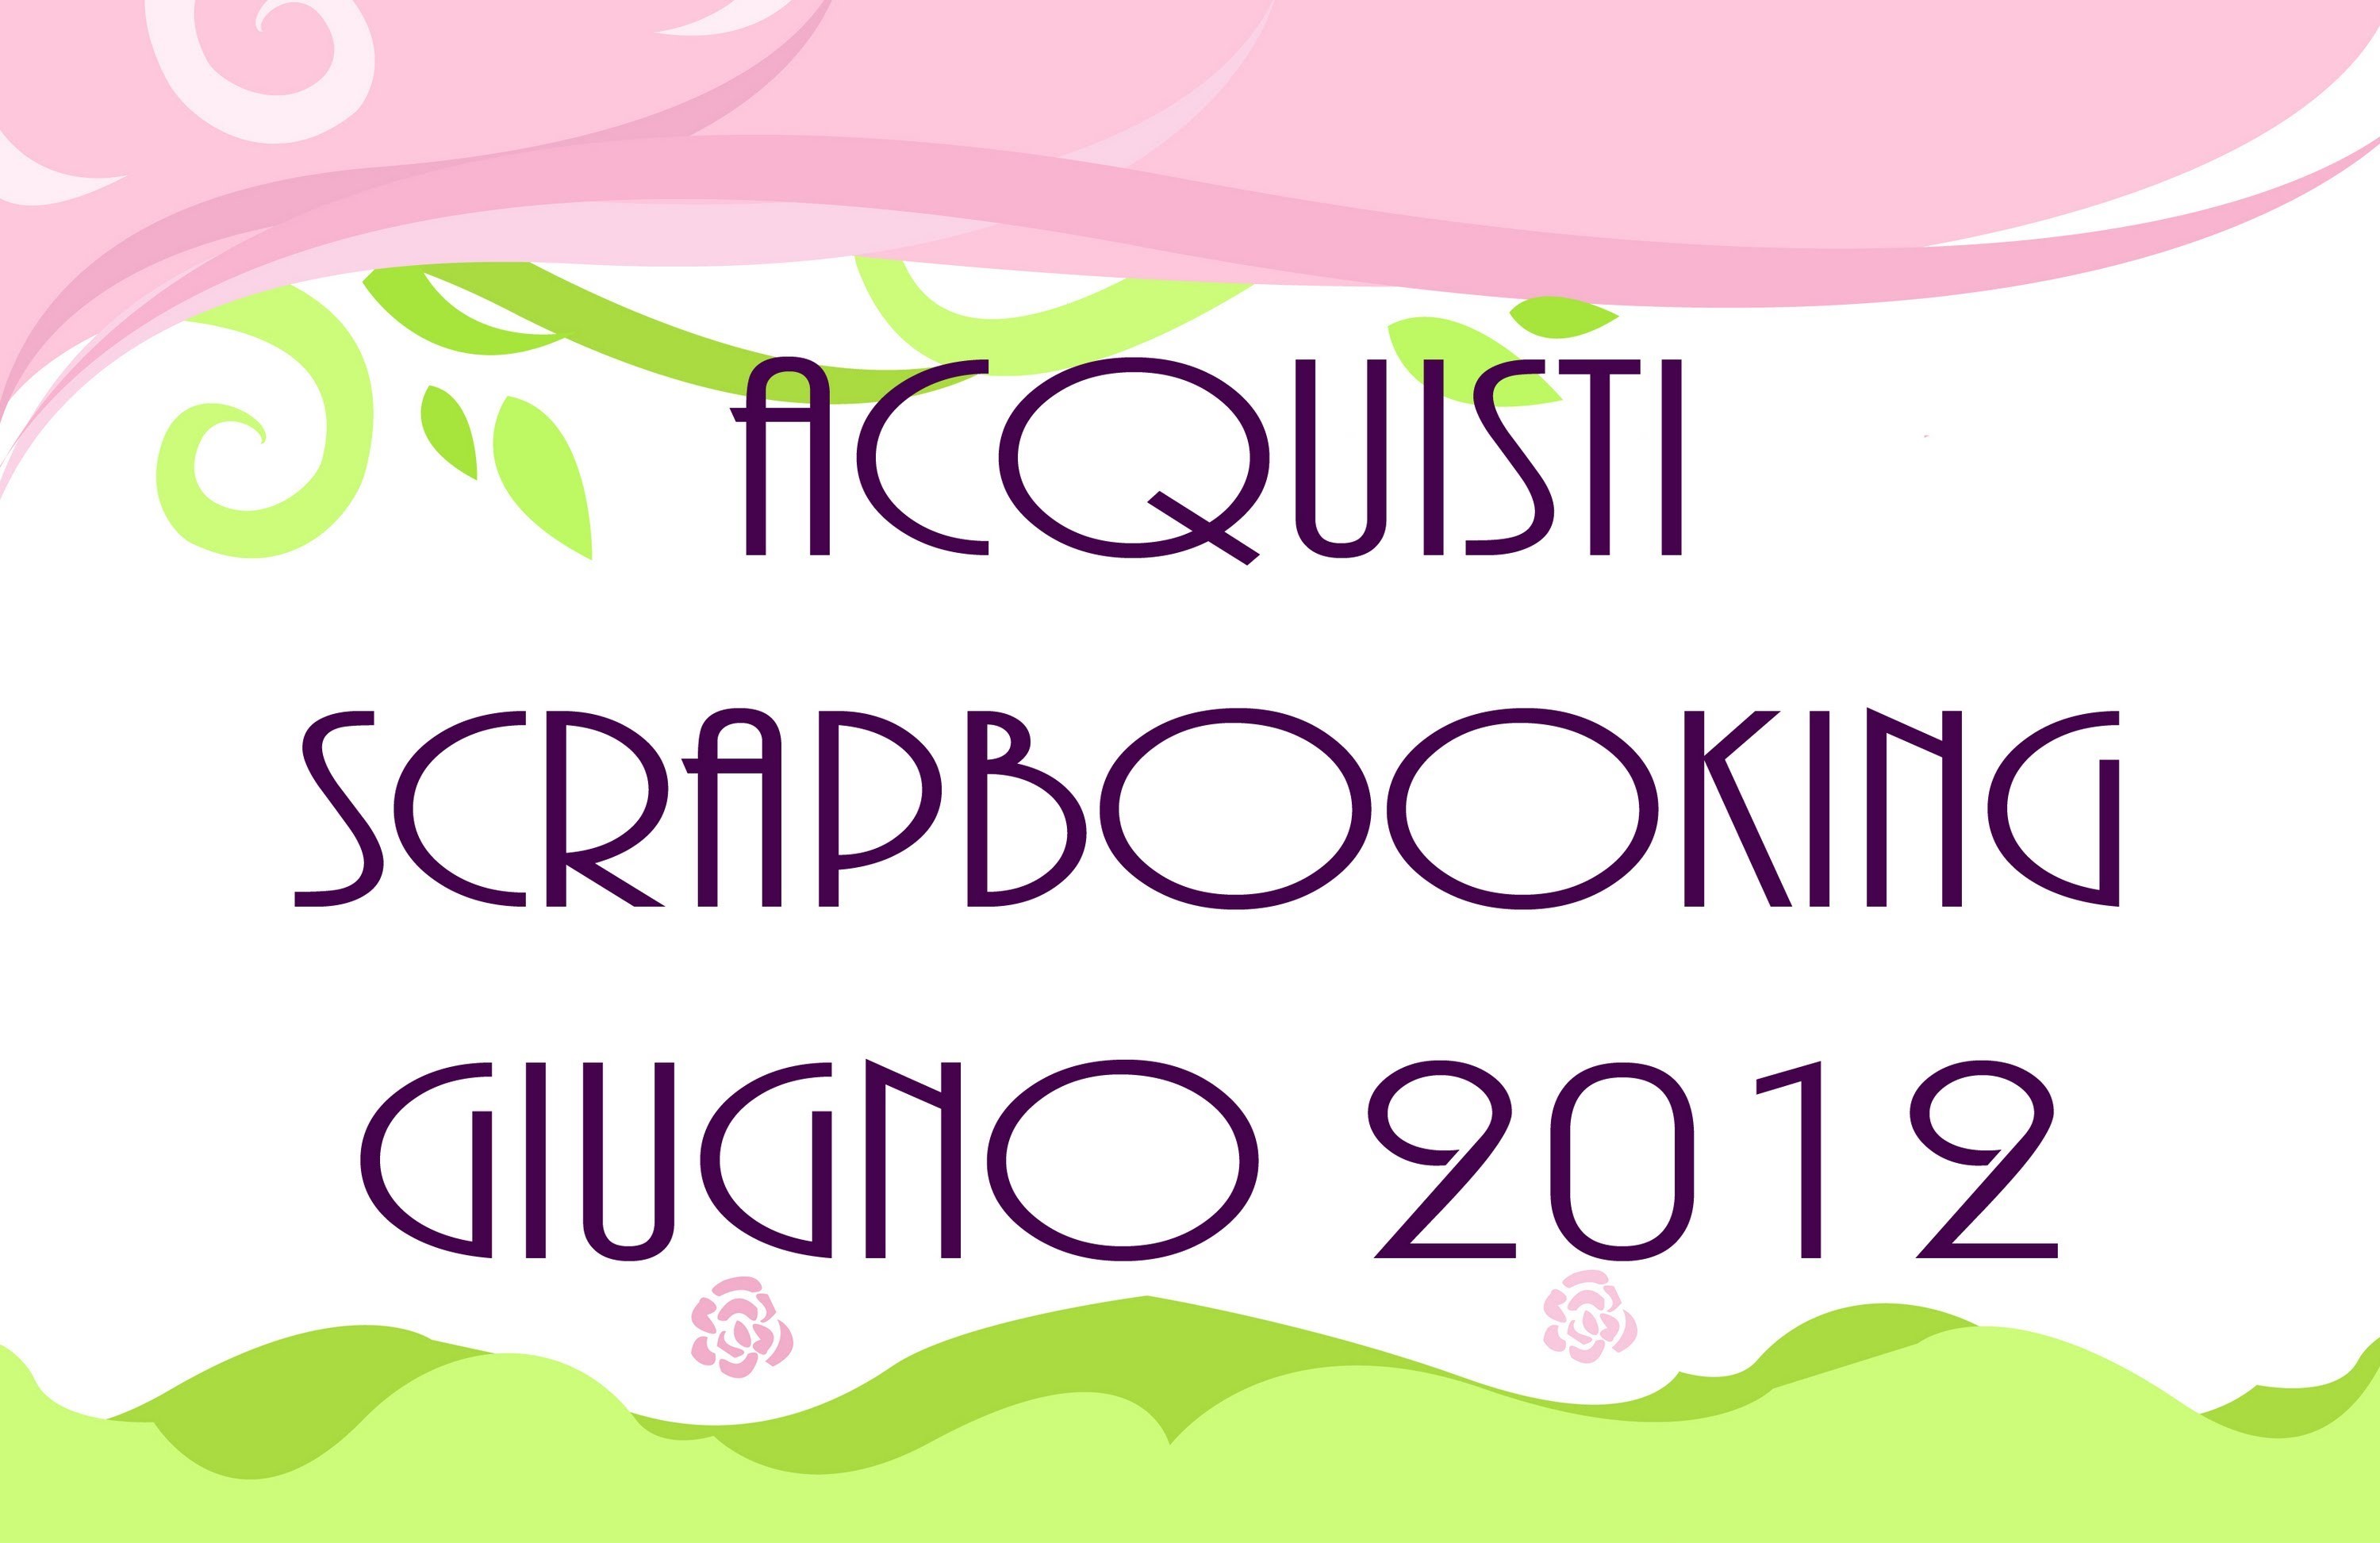 Acquisti Scrapbooking Giugno 2012 - june 2012 purchases 1.2